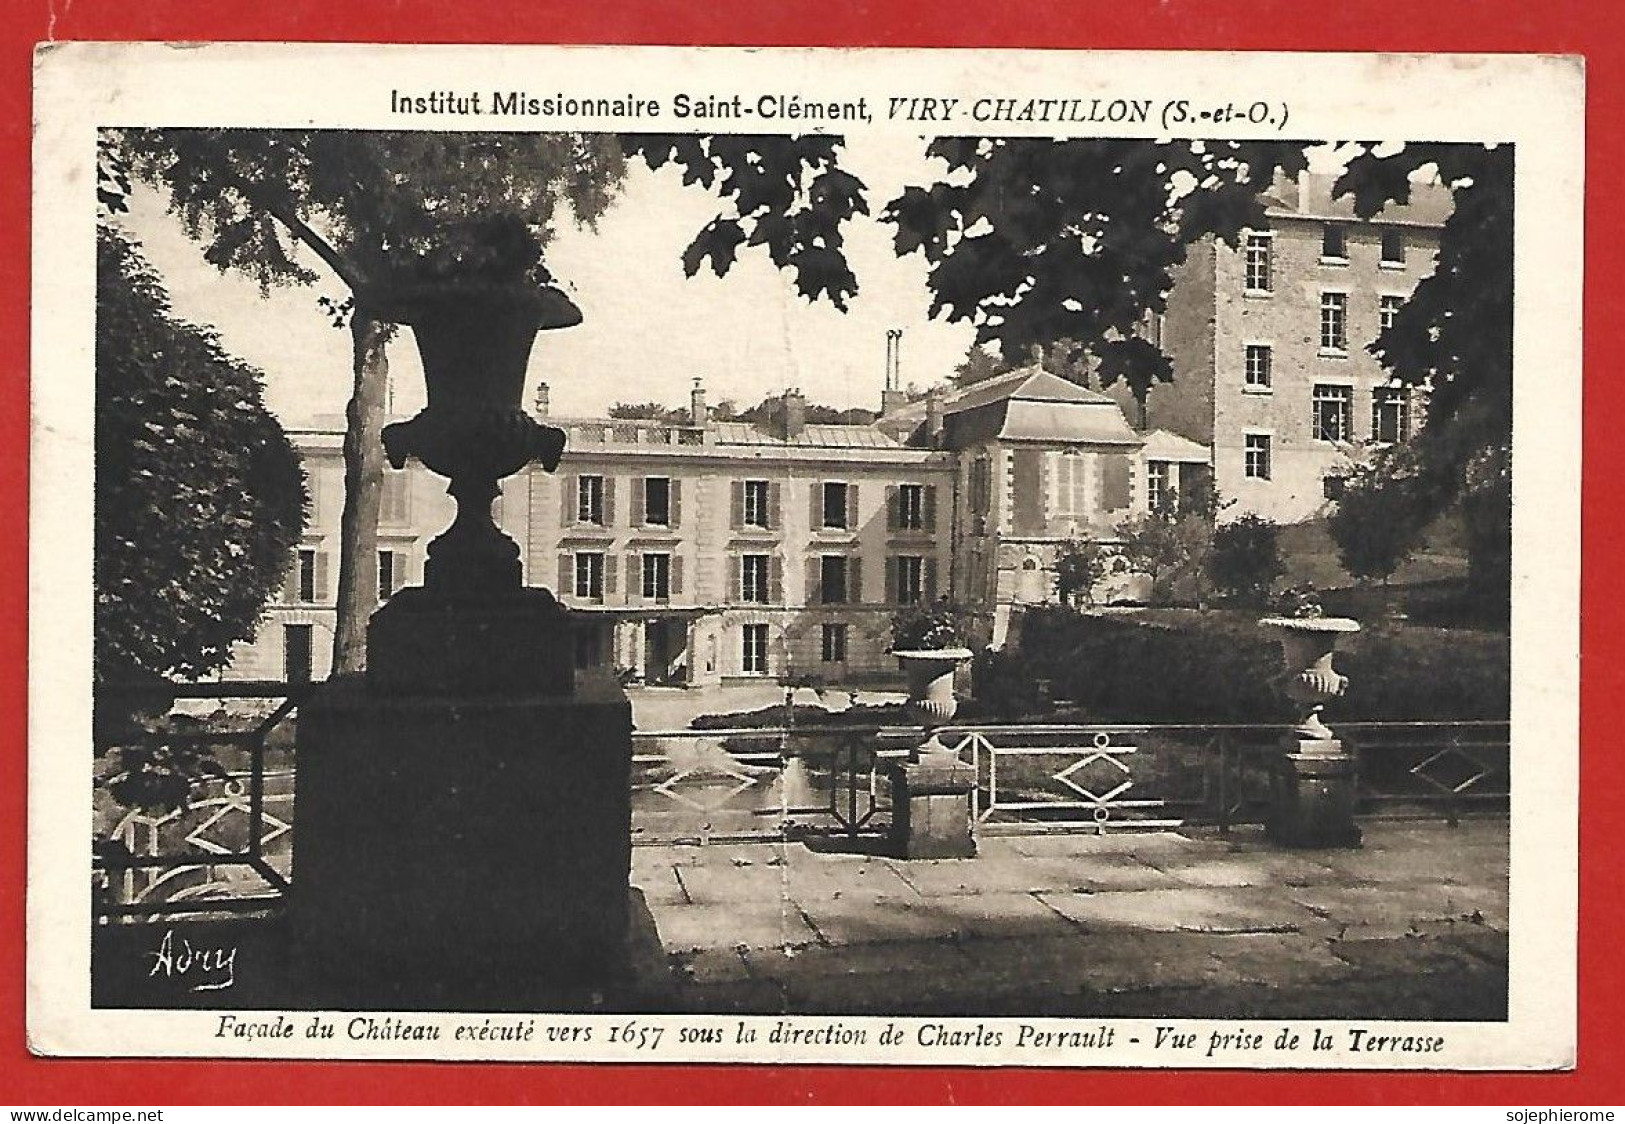 Viry-Châtillon (91) Institut Missionnaire St-Clément Façade Du Château 1657 Charles Perrault Vue Prise De La Terrasse - Viry-Châtillon